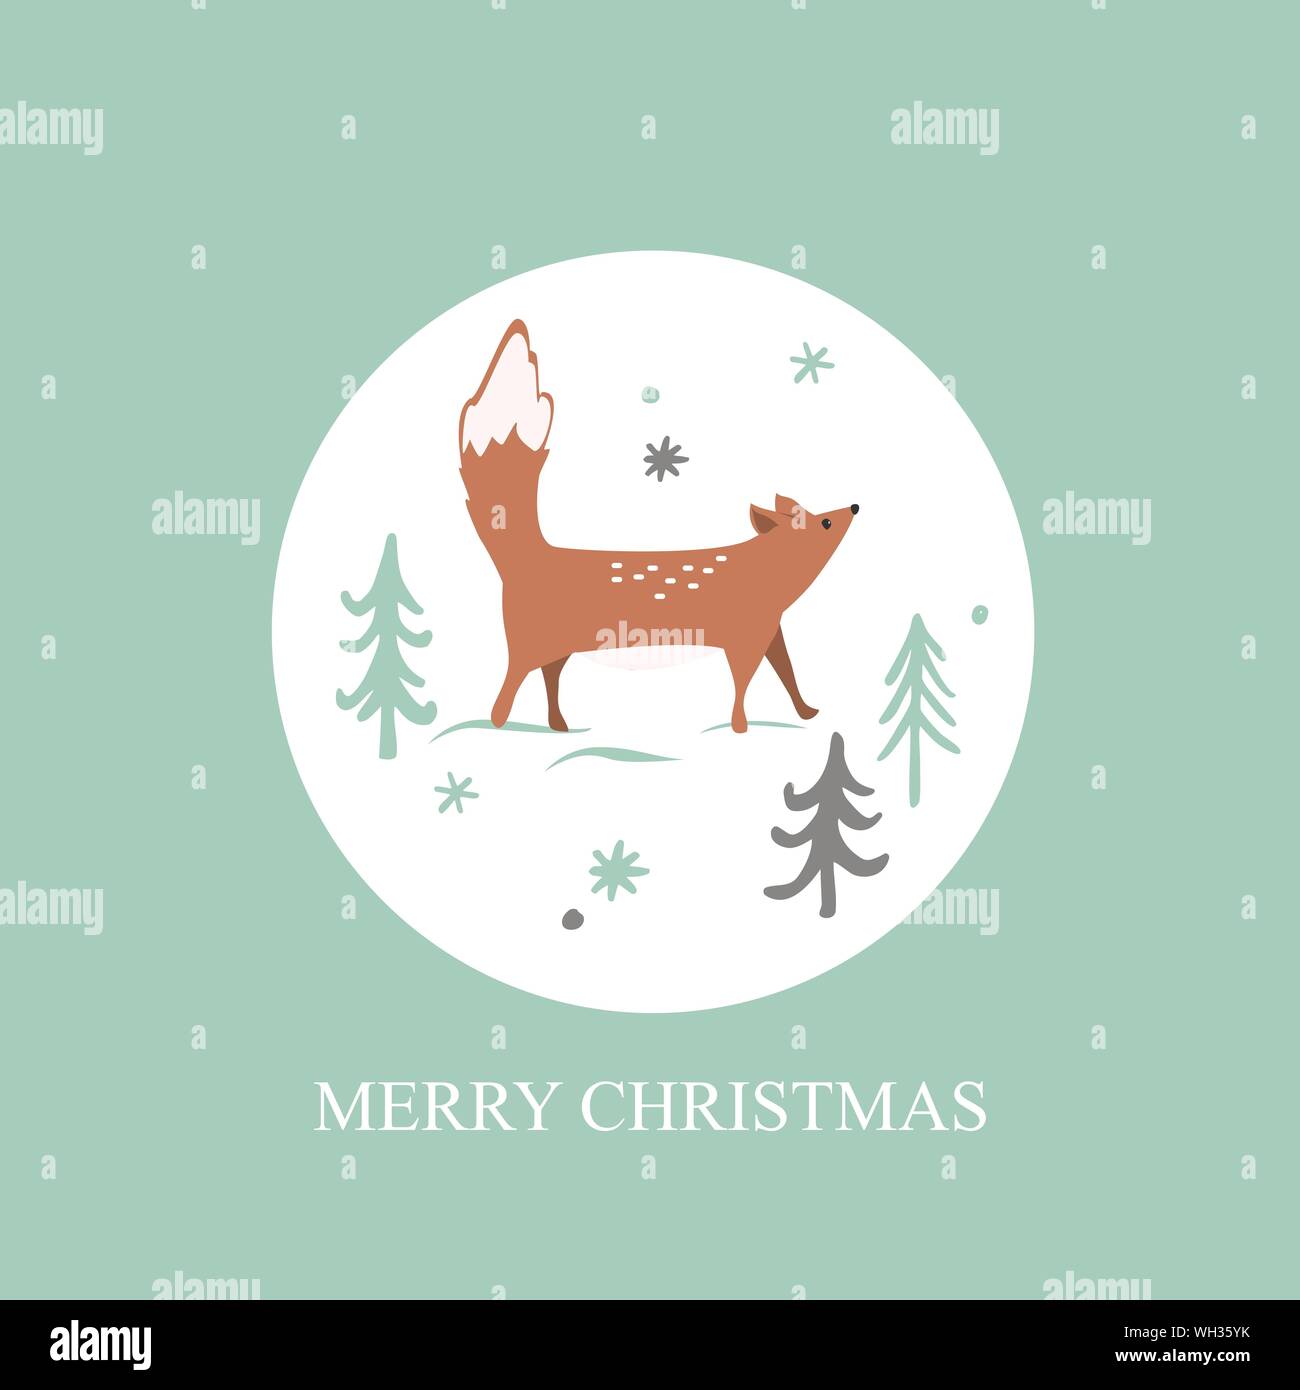 Weihnachtskarte mit Winter Wald Hintergrund. Cute Fox, Bäume und snowflaces. Vector Illustration. Stock Vektor